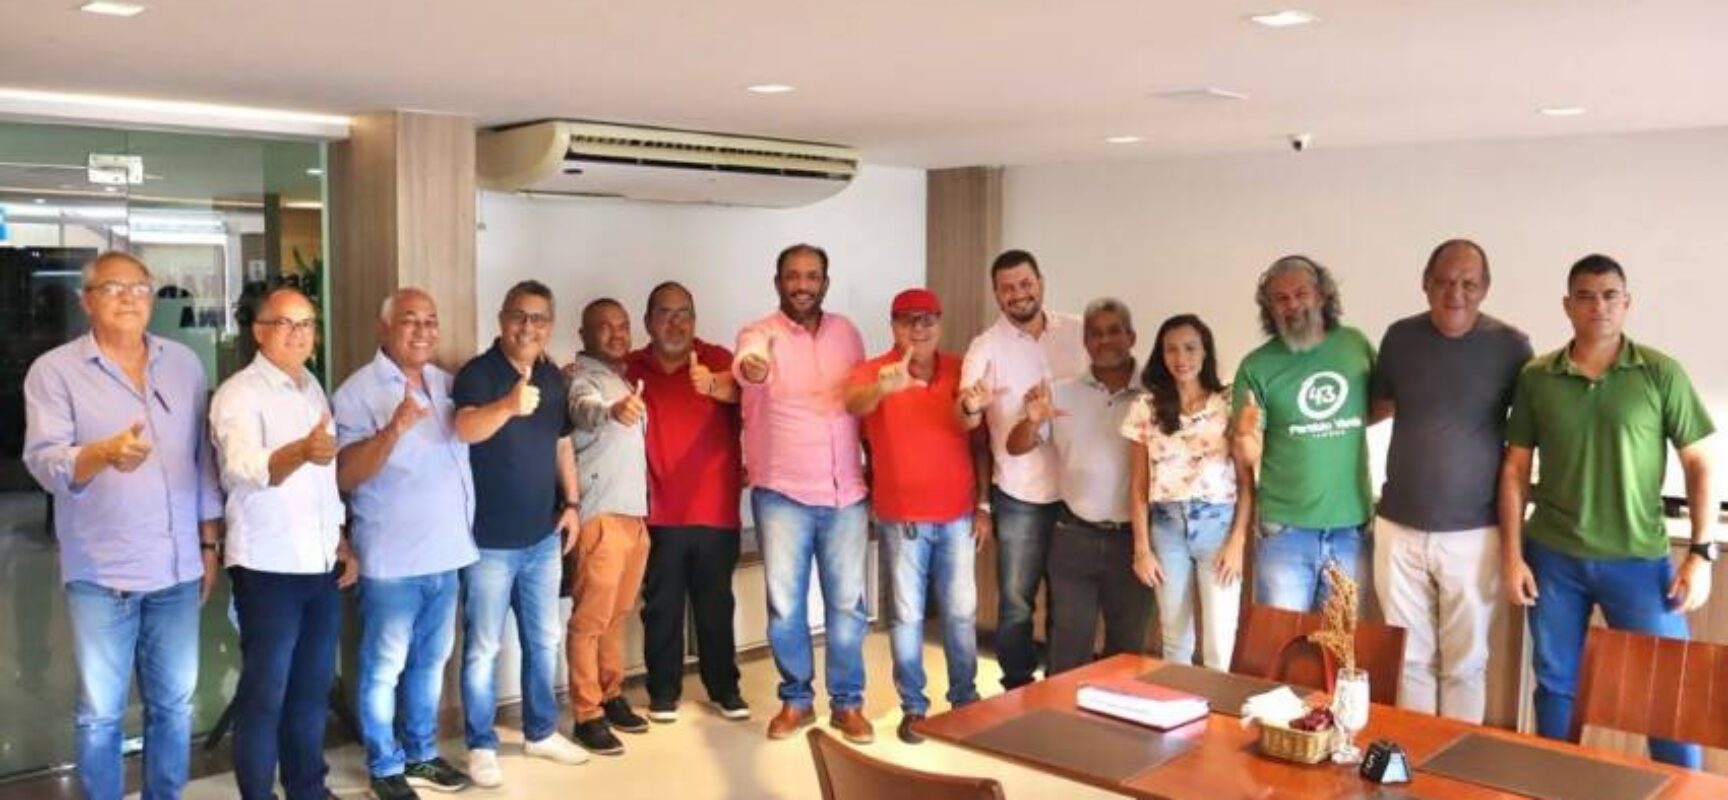 Marão, presidente do PSD/Ilhéus, se reúne com presidentes de partidos da base de Lula e Jerônimo, em prol do fortalecimento da UNIDADE POLÍTICA em Ilhéus